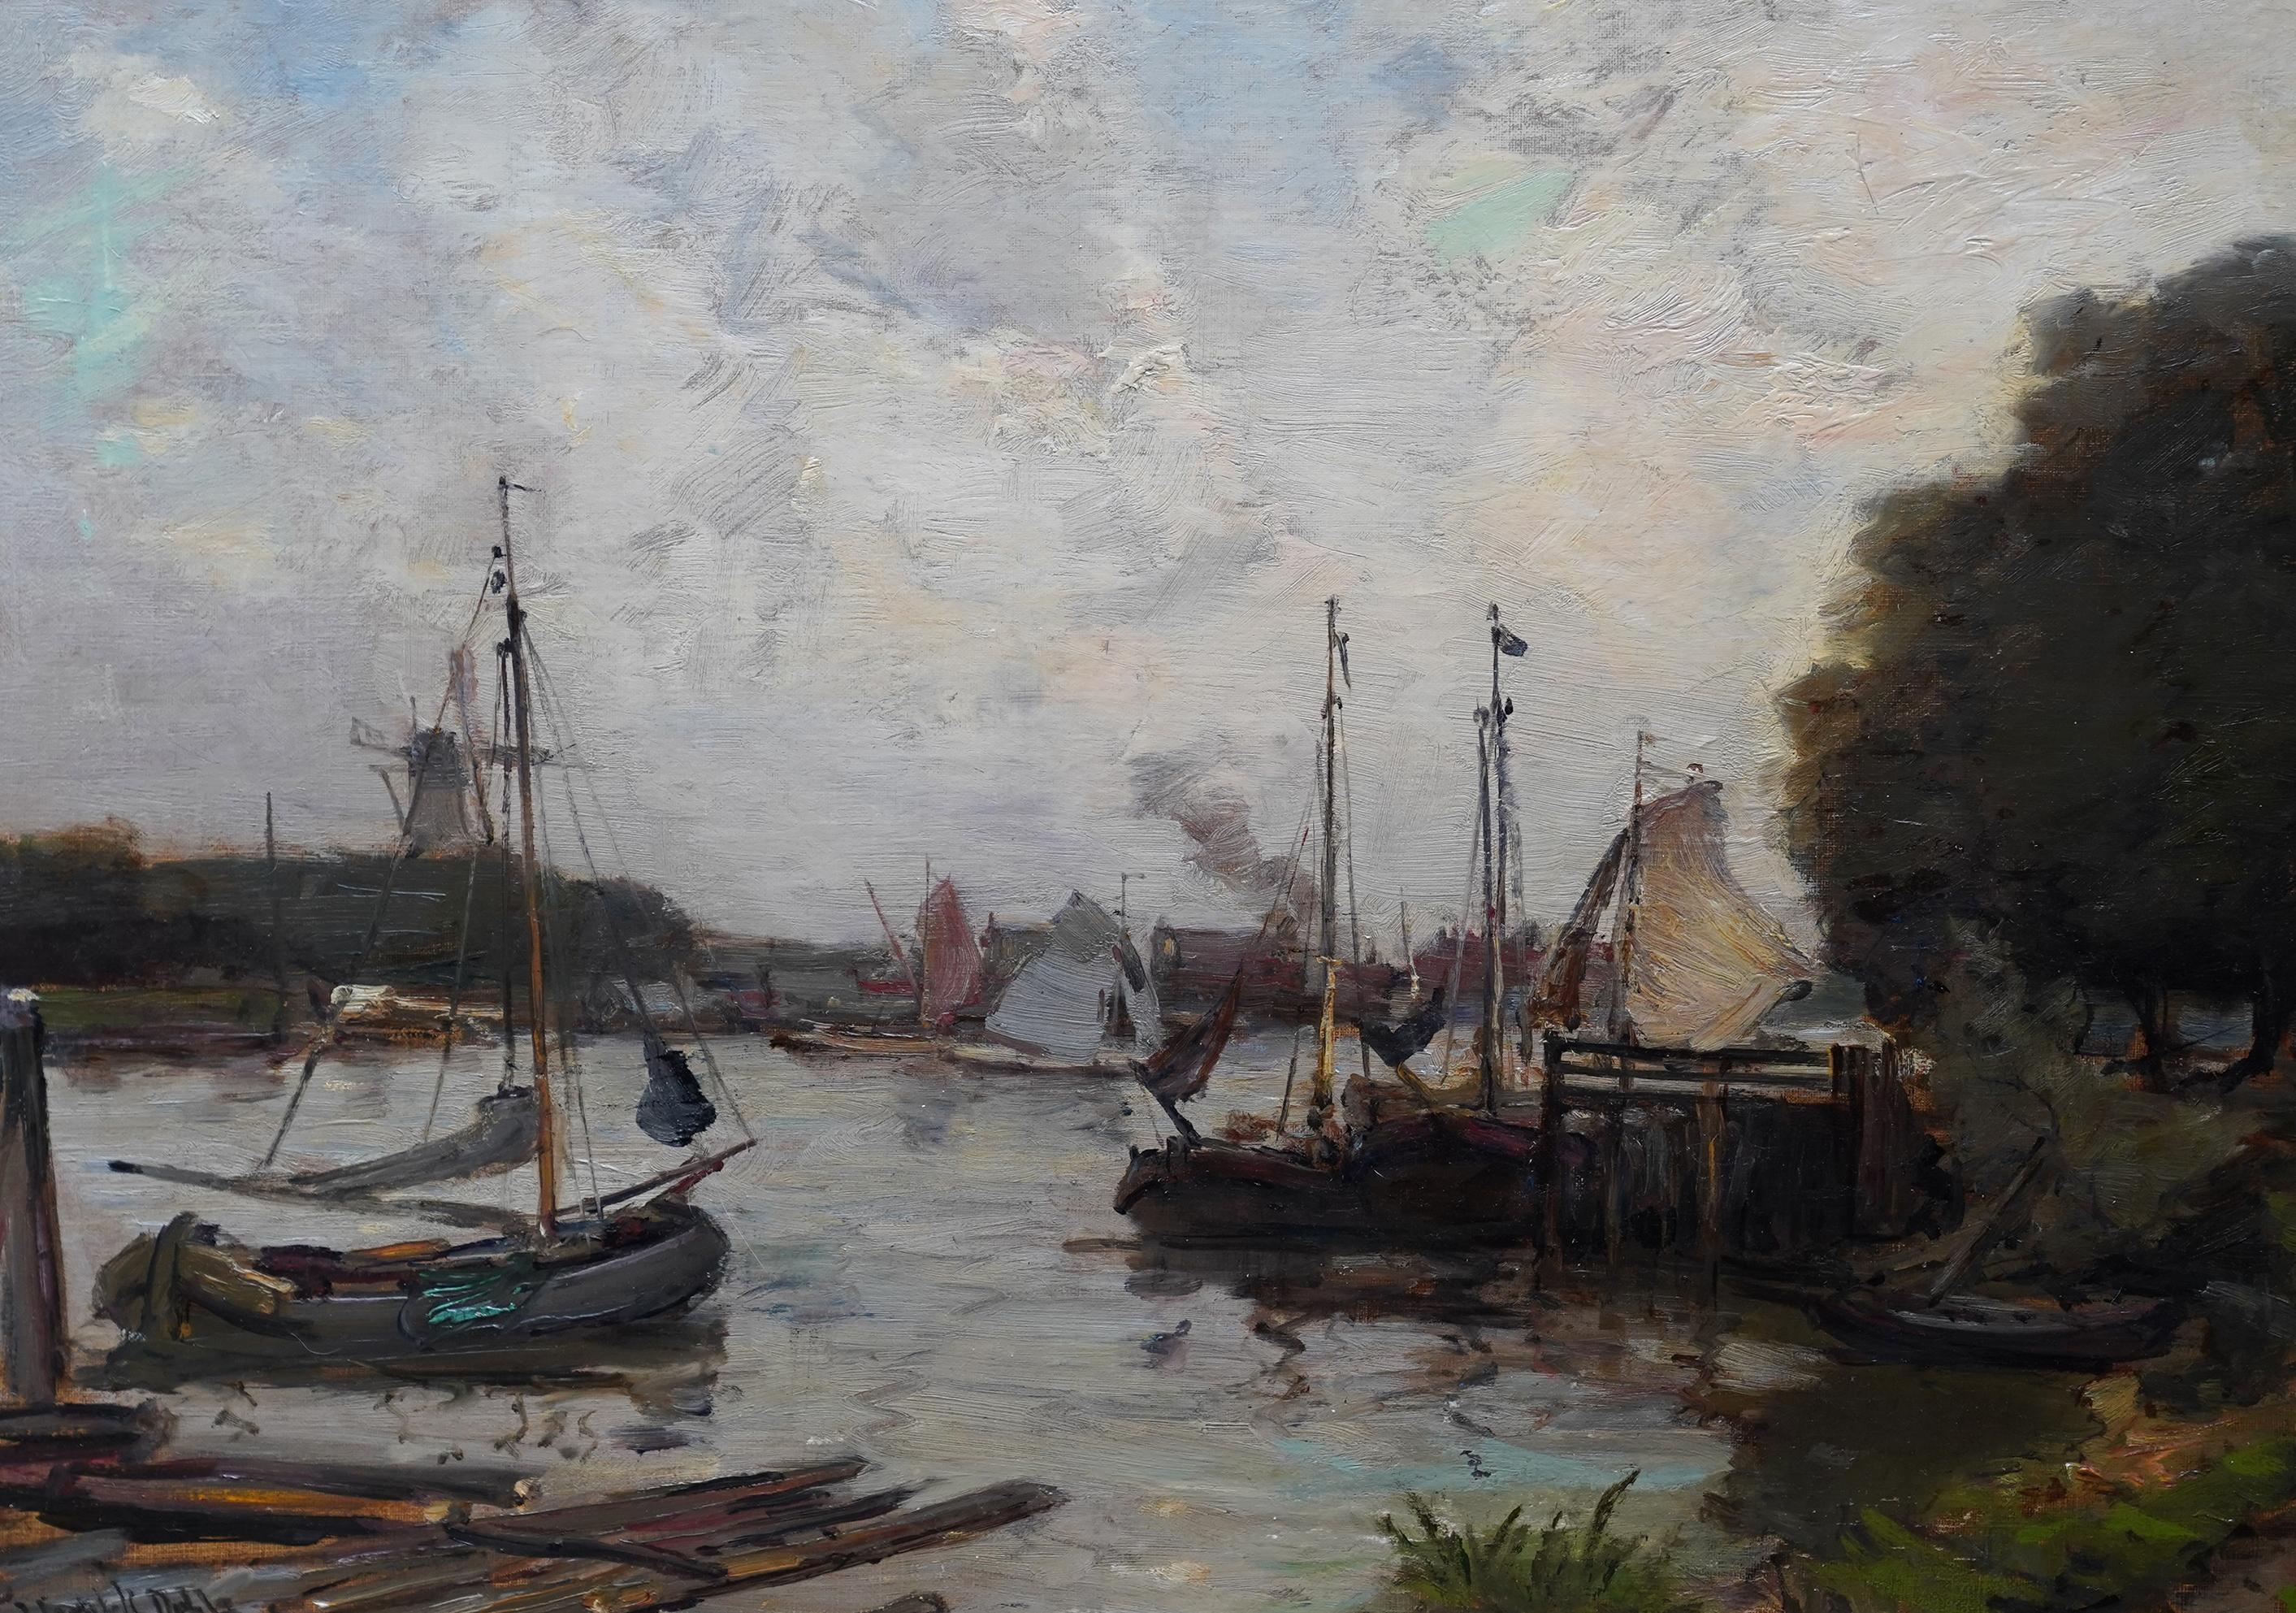 Harbour Seascape - peinture à l'huile marine impressionniste écossaise de l'époque édouardienne - Impressionnisme Painting par James Campbell Noble